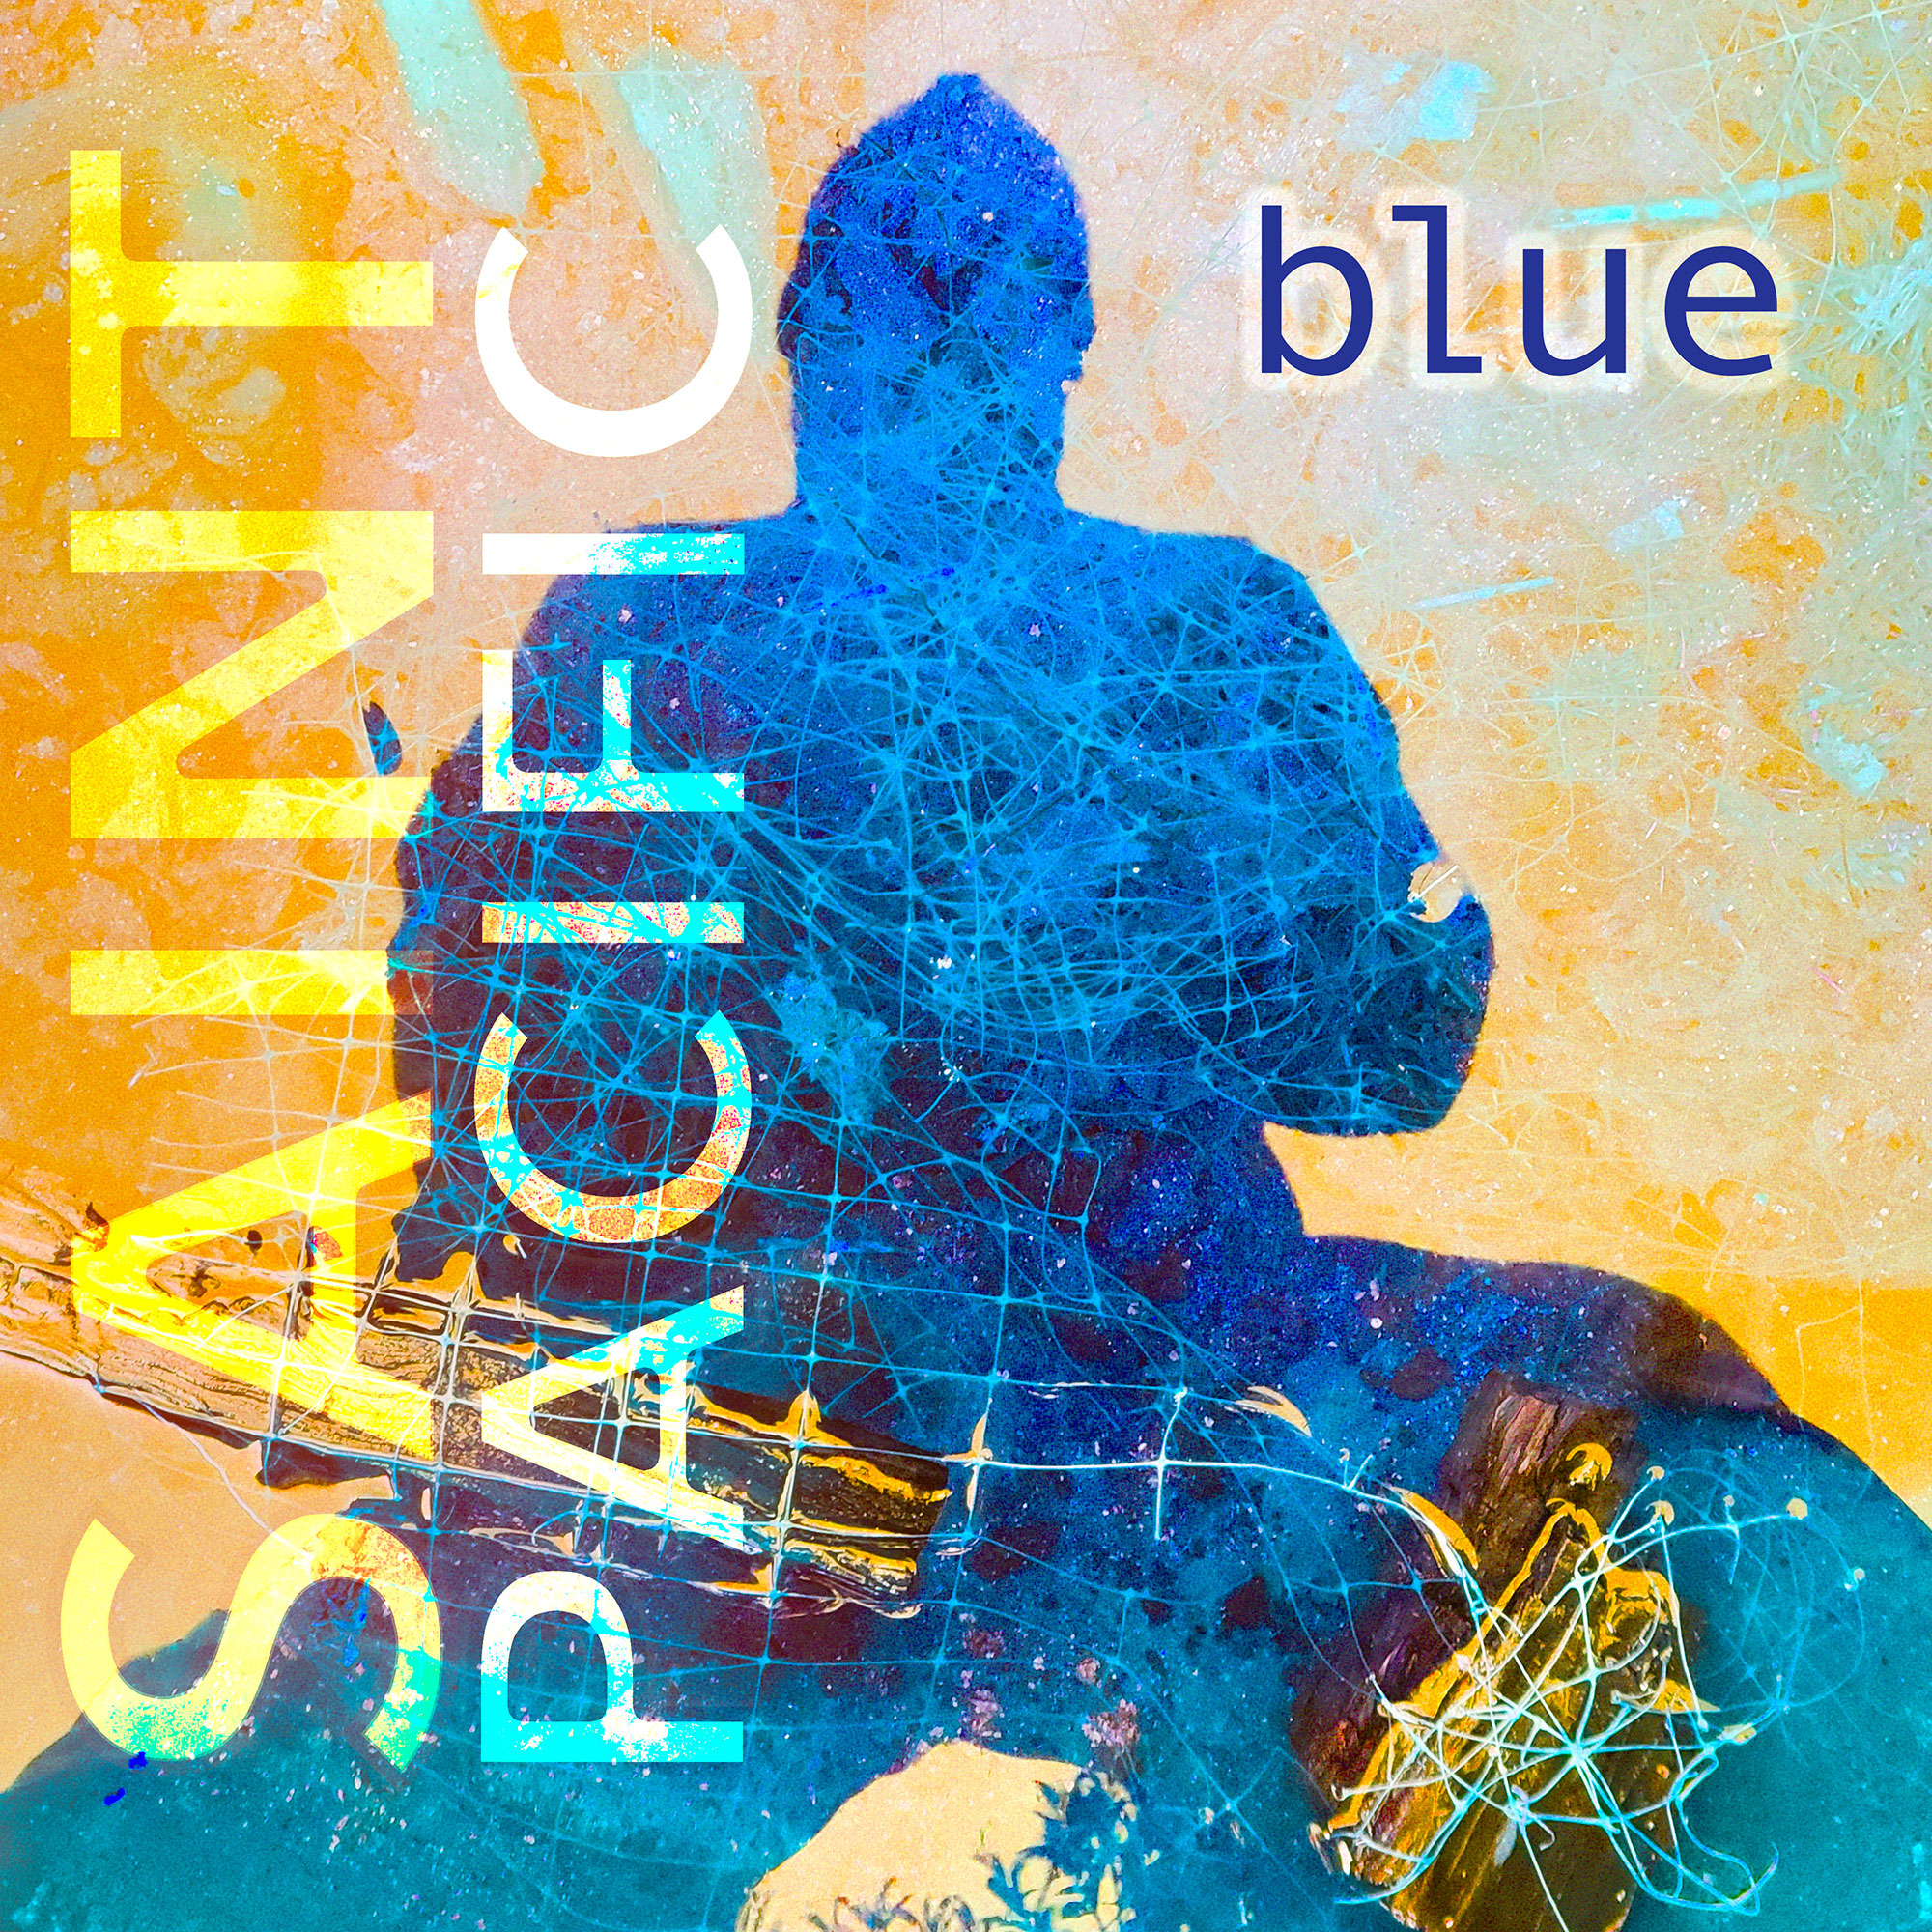  Escucha “Blue”, el más reciente álbum de Saint Pacific